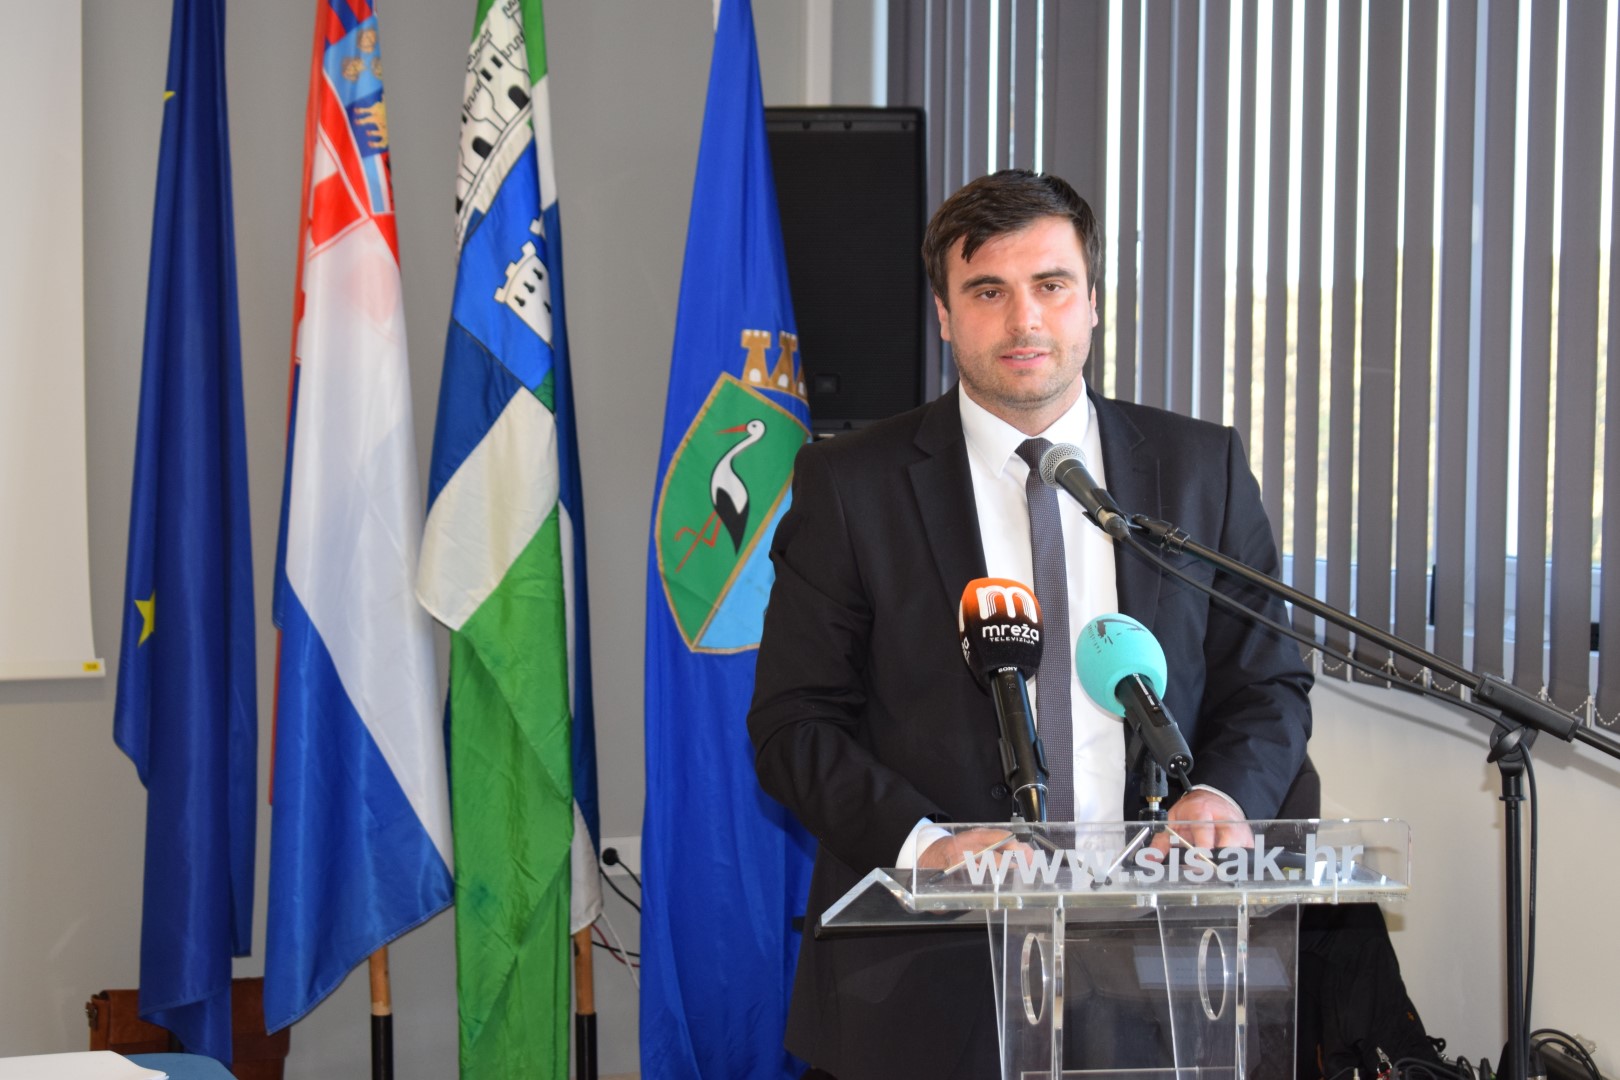 Župan Ivan Celjak je u srijedu, 20. listopada 2021. godine, u prostoru Poduzetničkog inkubatora PISAK u Sisku nazočio 3. tematskoj sjednici Gradskog vijeća Grada Siska na temu potresa i obnove.